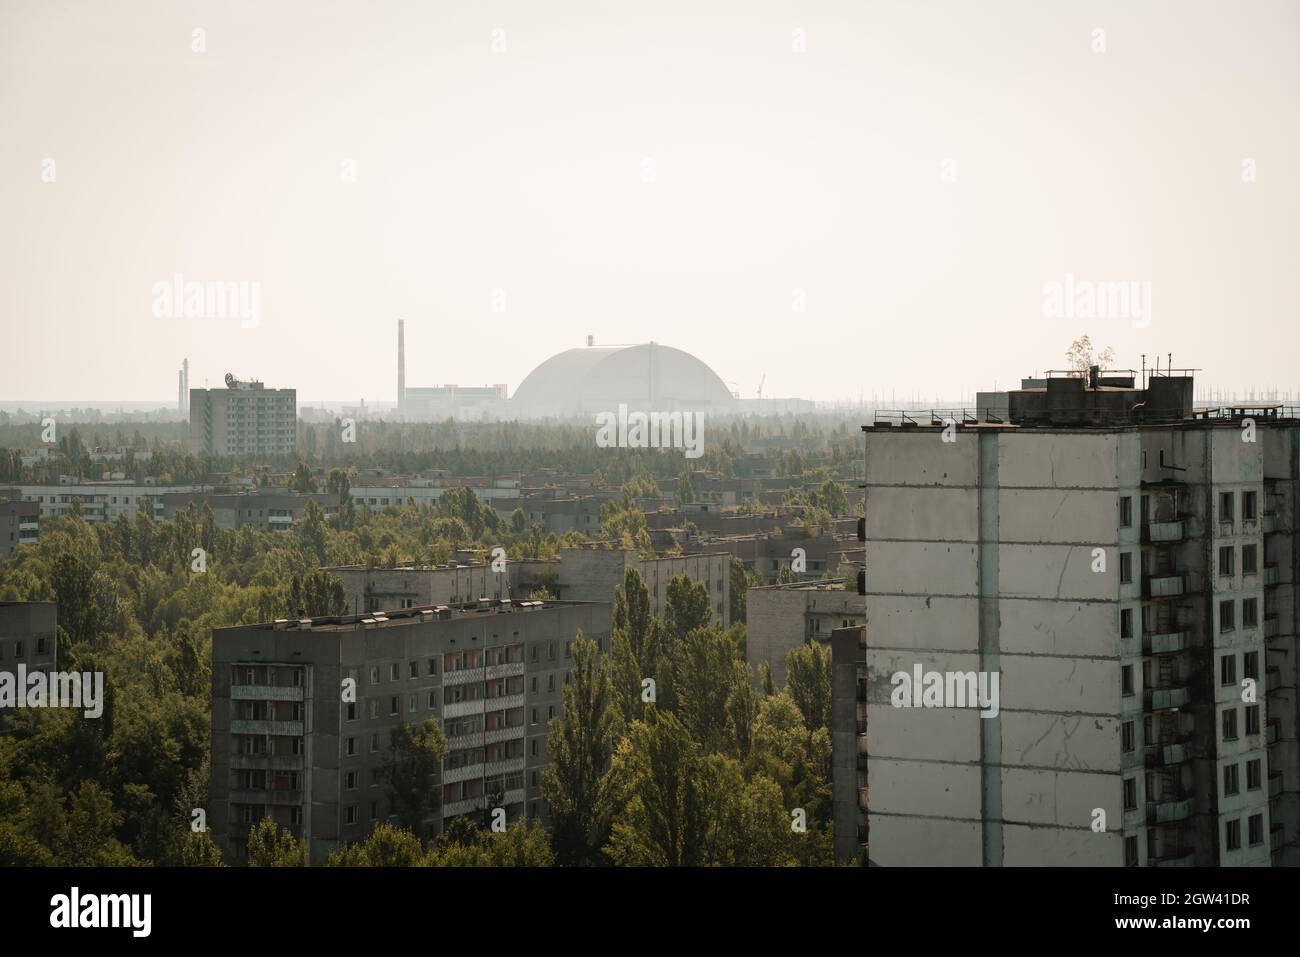 Luftaufnahme der Sperrzone von Pripyat und Tschernobyl mit Reaktor des Kernkraftwerks Tschernobyl 4 Neue sichere Begrenzung im Hintergrund - Pripyat, Tschernob Stockfoto